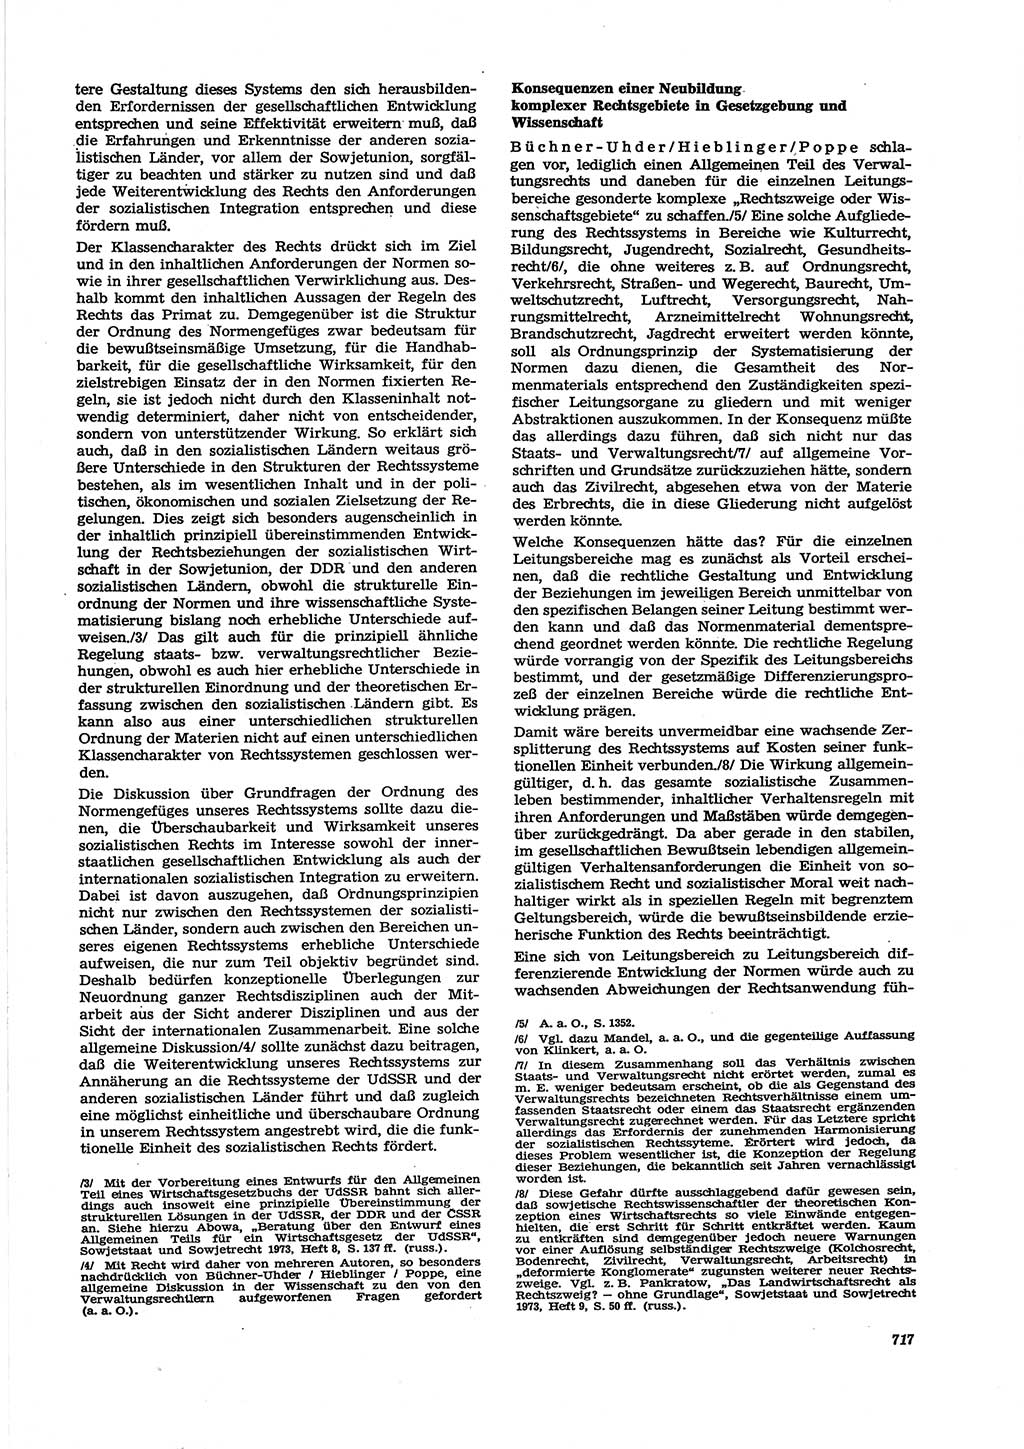 Neue Justiz (NJ), Zeitschrift für Recht und Rechtswissenschaft [Deutsche Demokratische Republik (DDR)], 27. Jahrgang 1973, Seite 717 (NJ DDR 1973, S. 717)